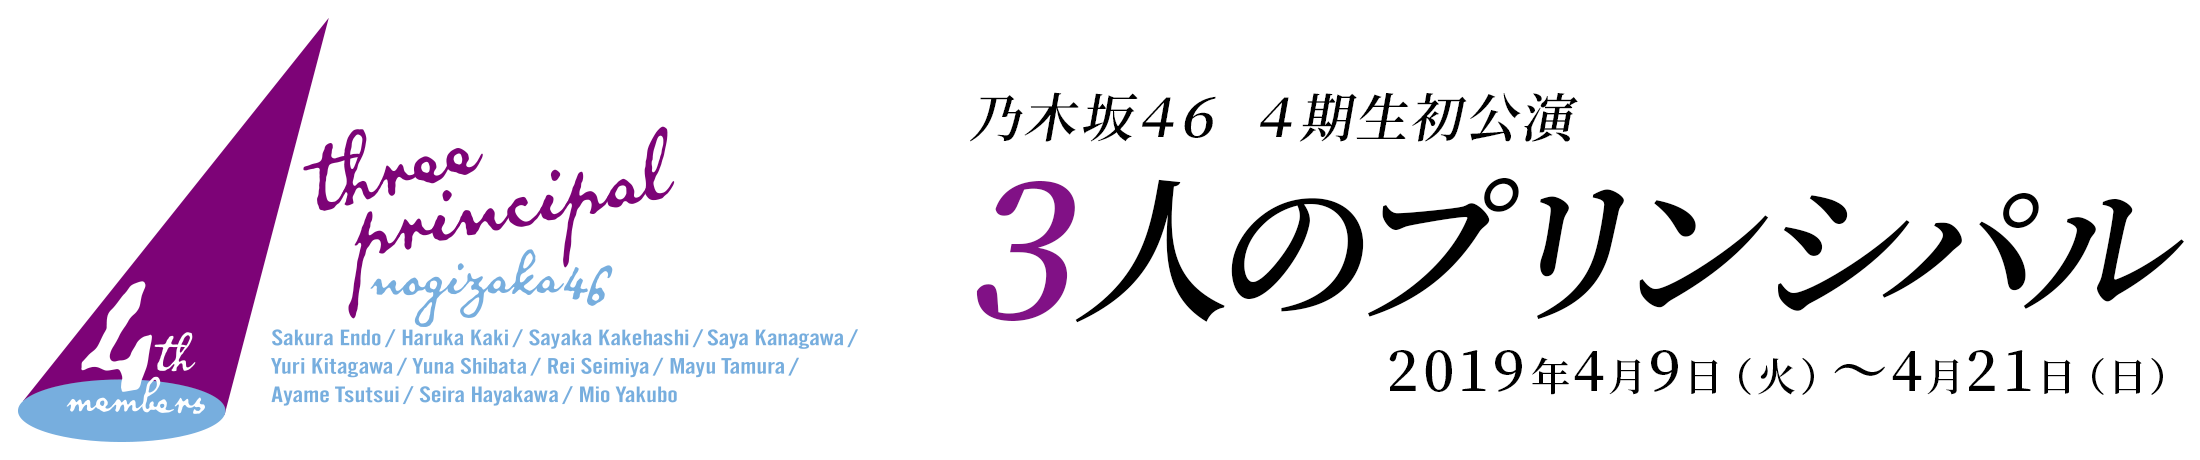 乃木坂46 4期生初公演 3人のプリンシパル